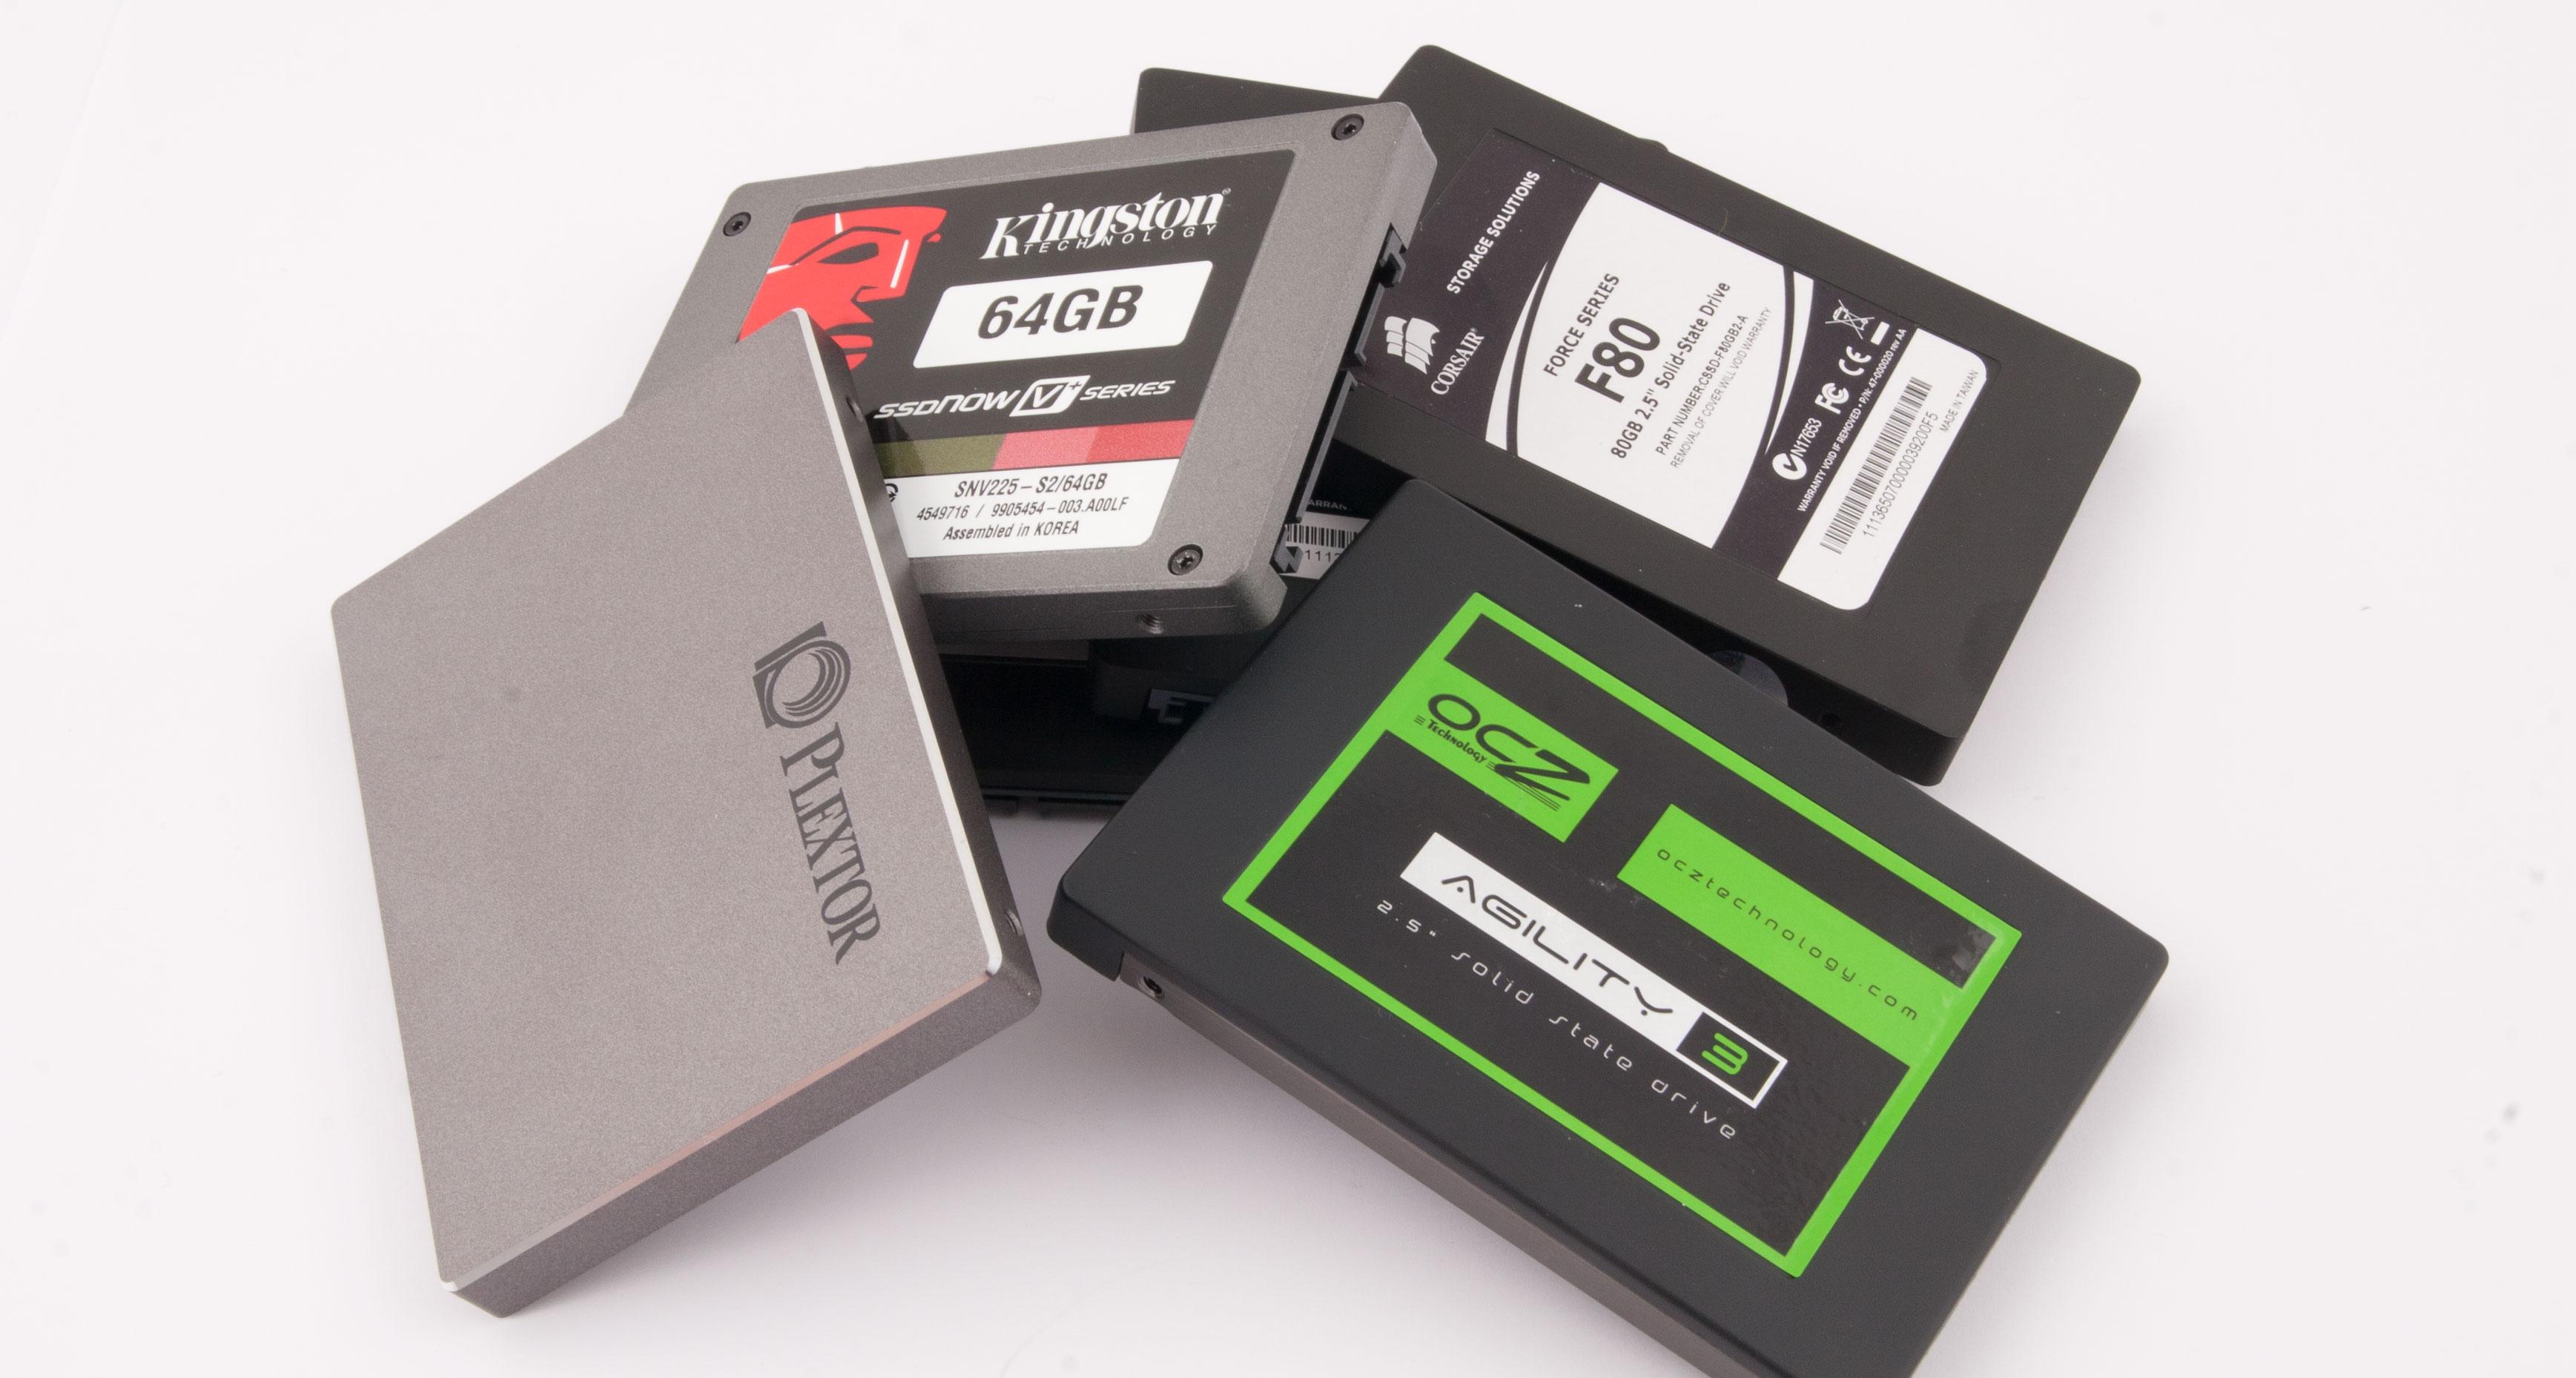 SSD-er er langt raskere enn den tradisjonelle harddisken